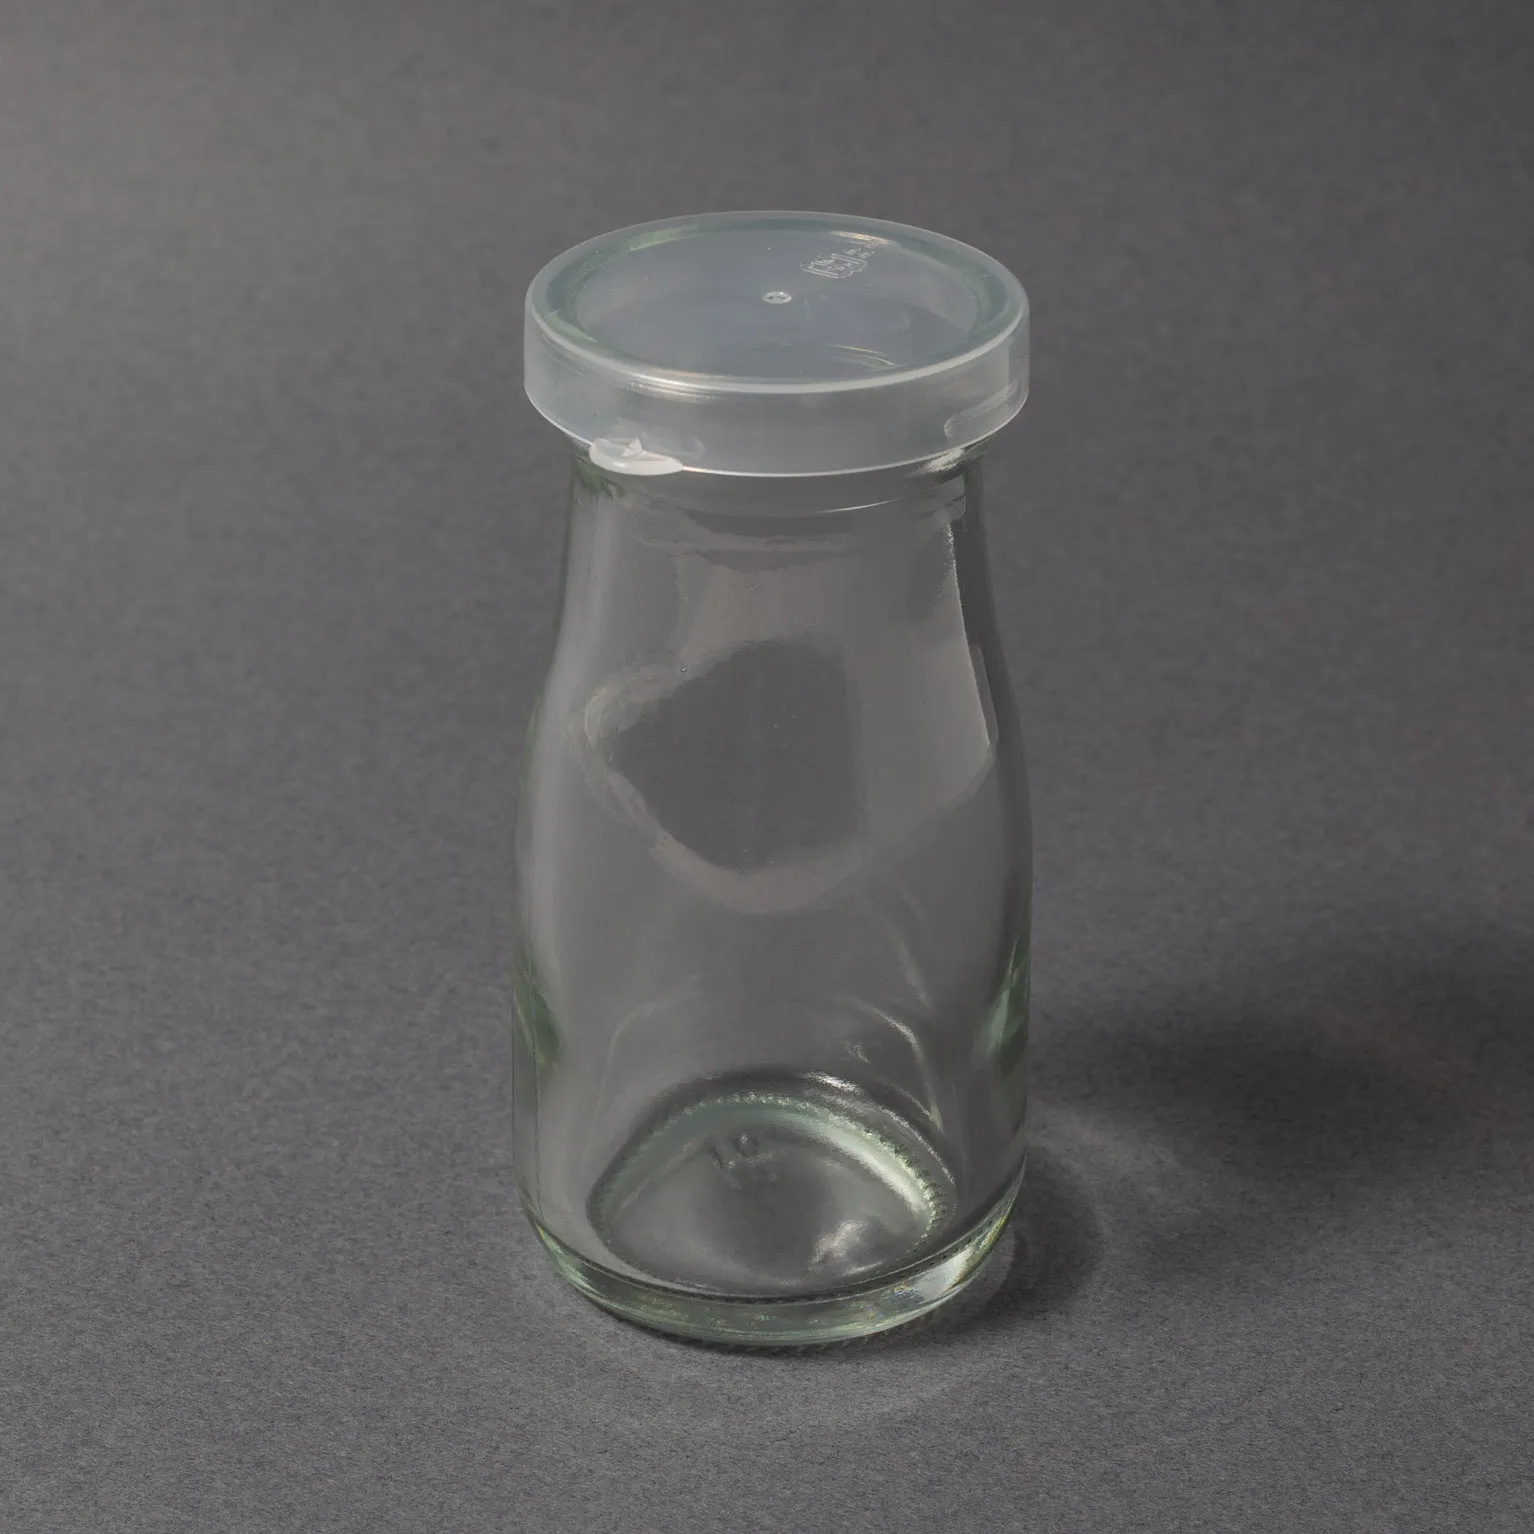 CD‐601 ロングミルク瓶 950㏄ 144